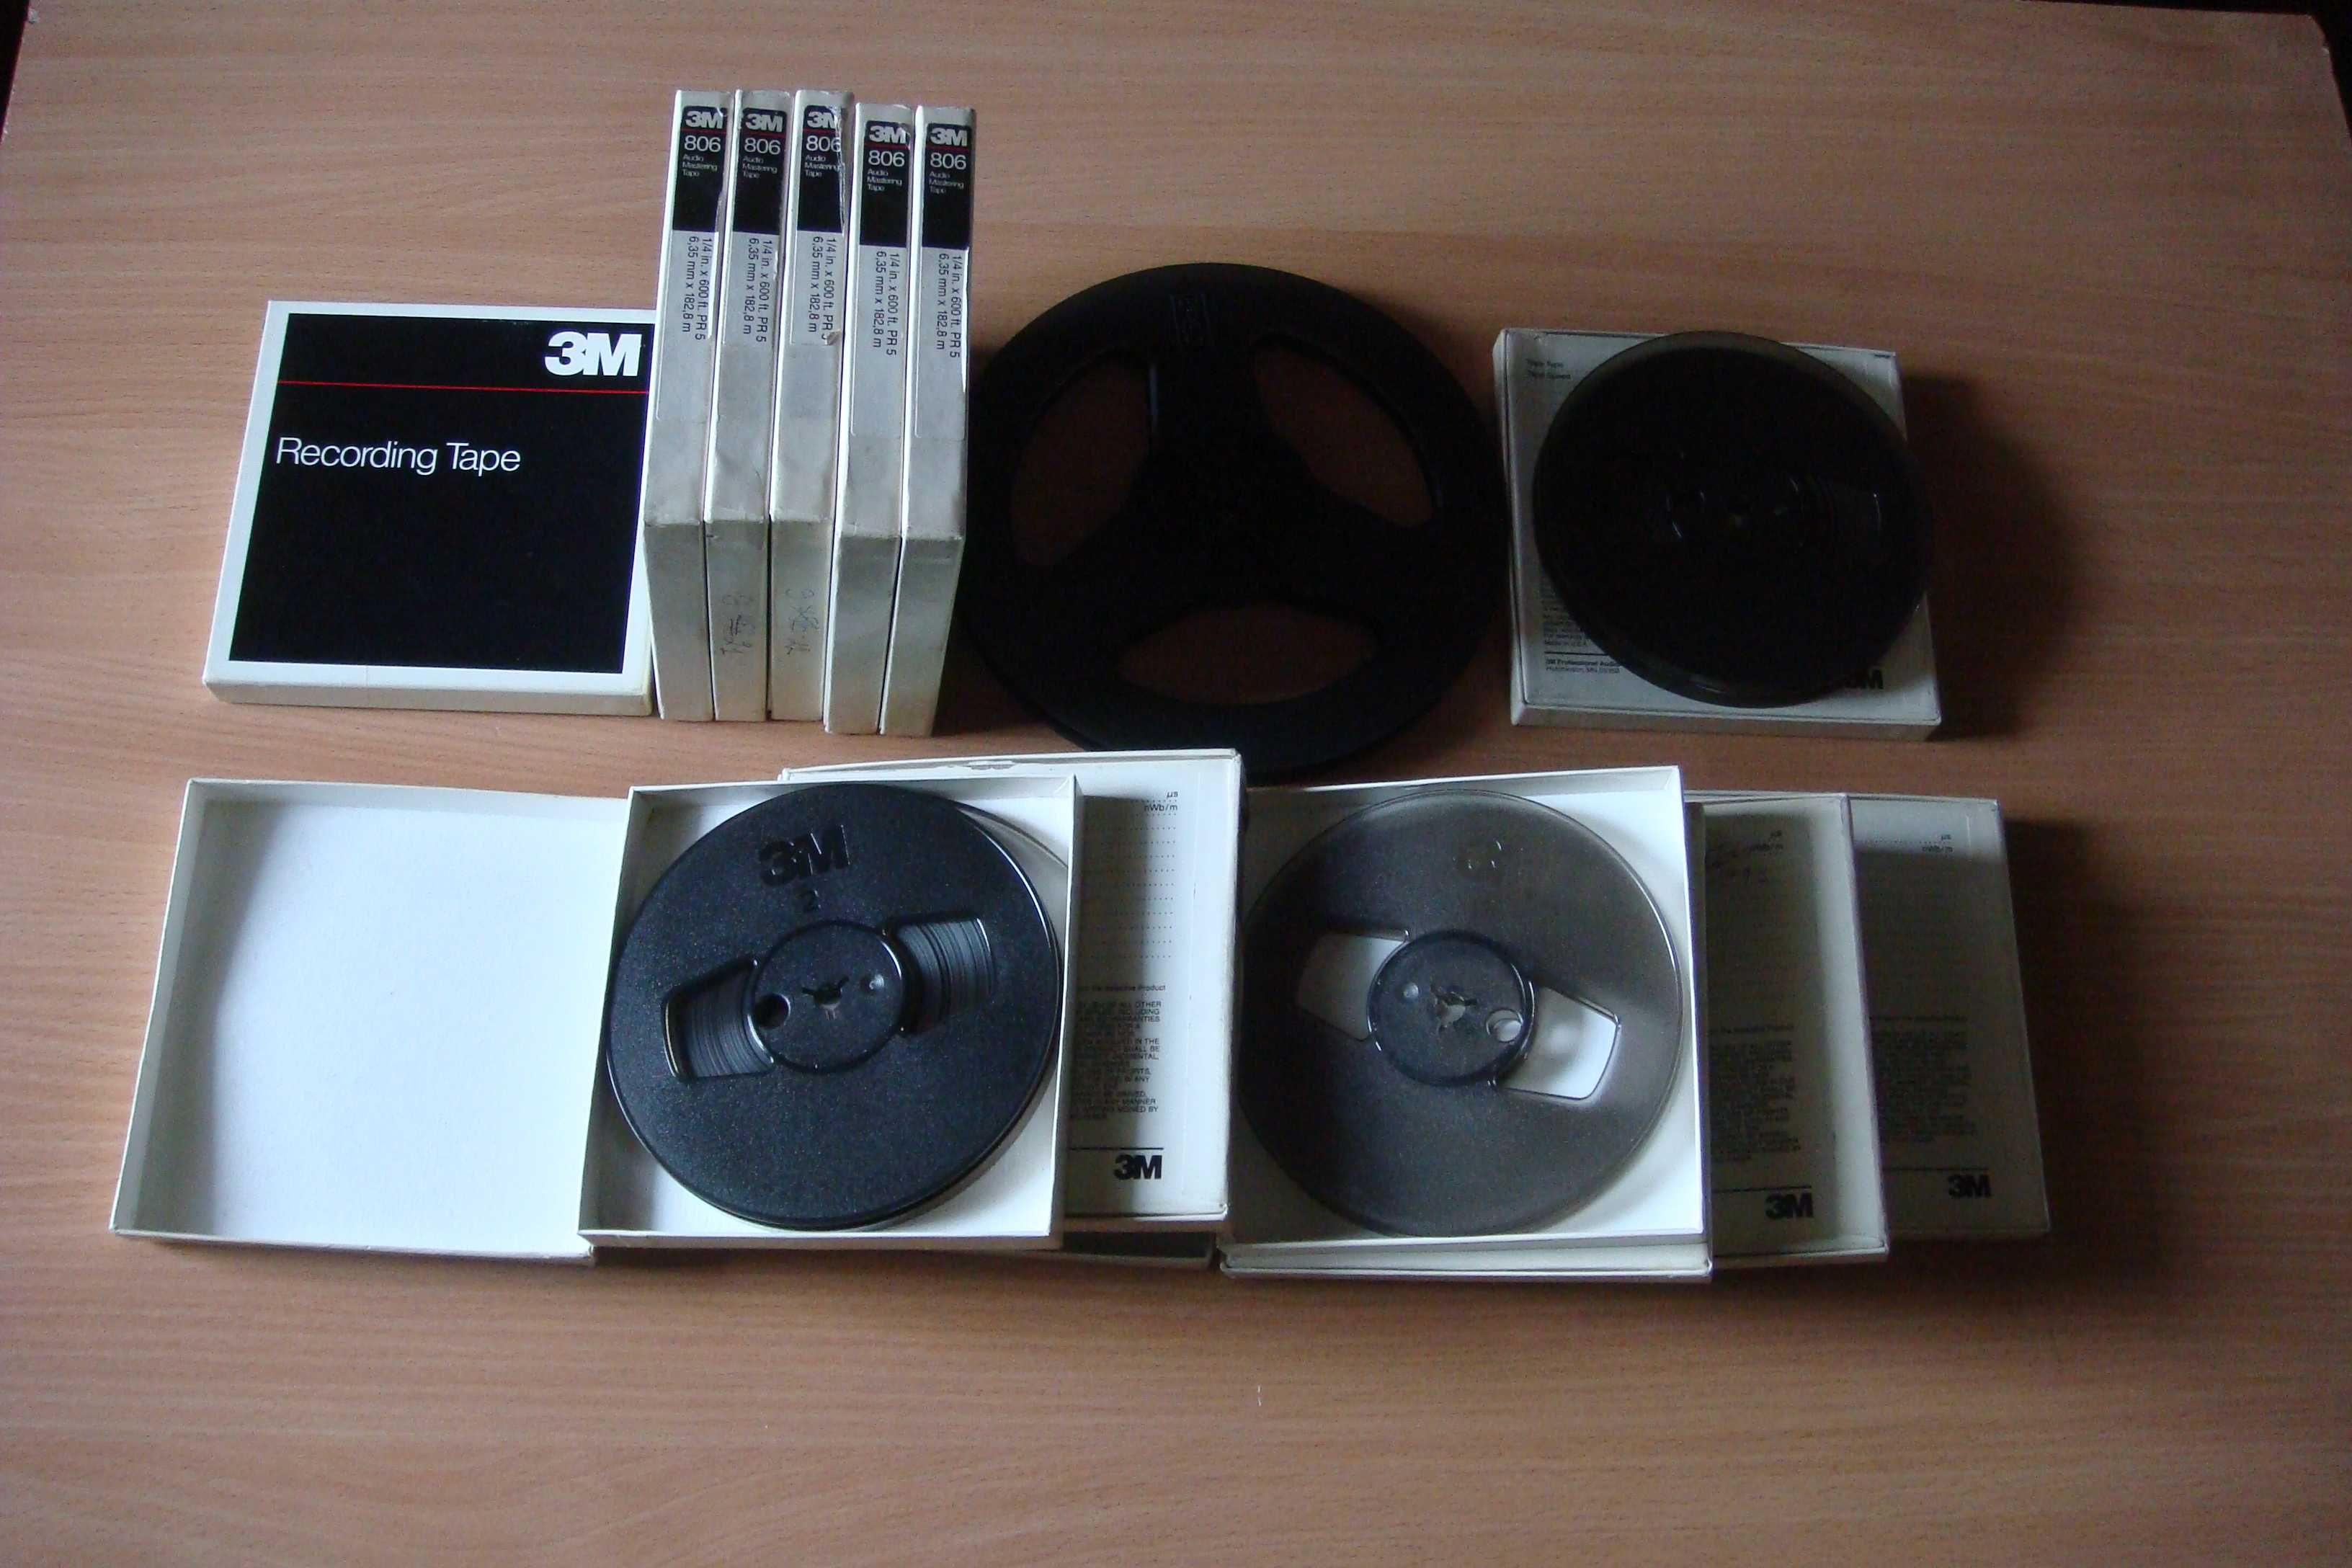 AMPEX 467 ( магнитная лента для цифровой записи и катушки )